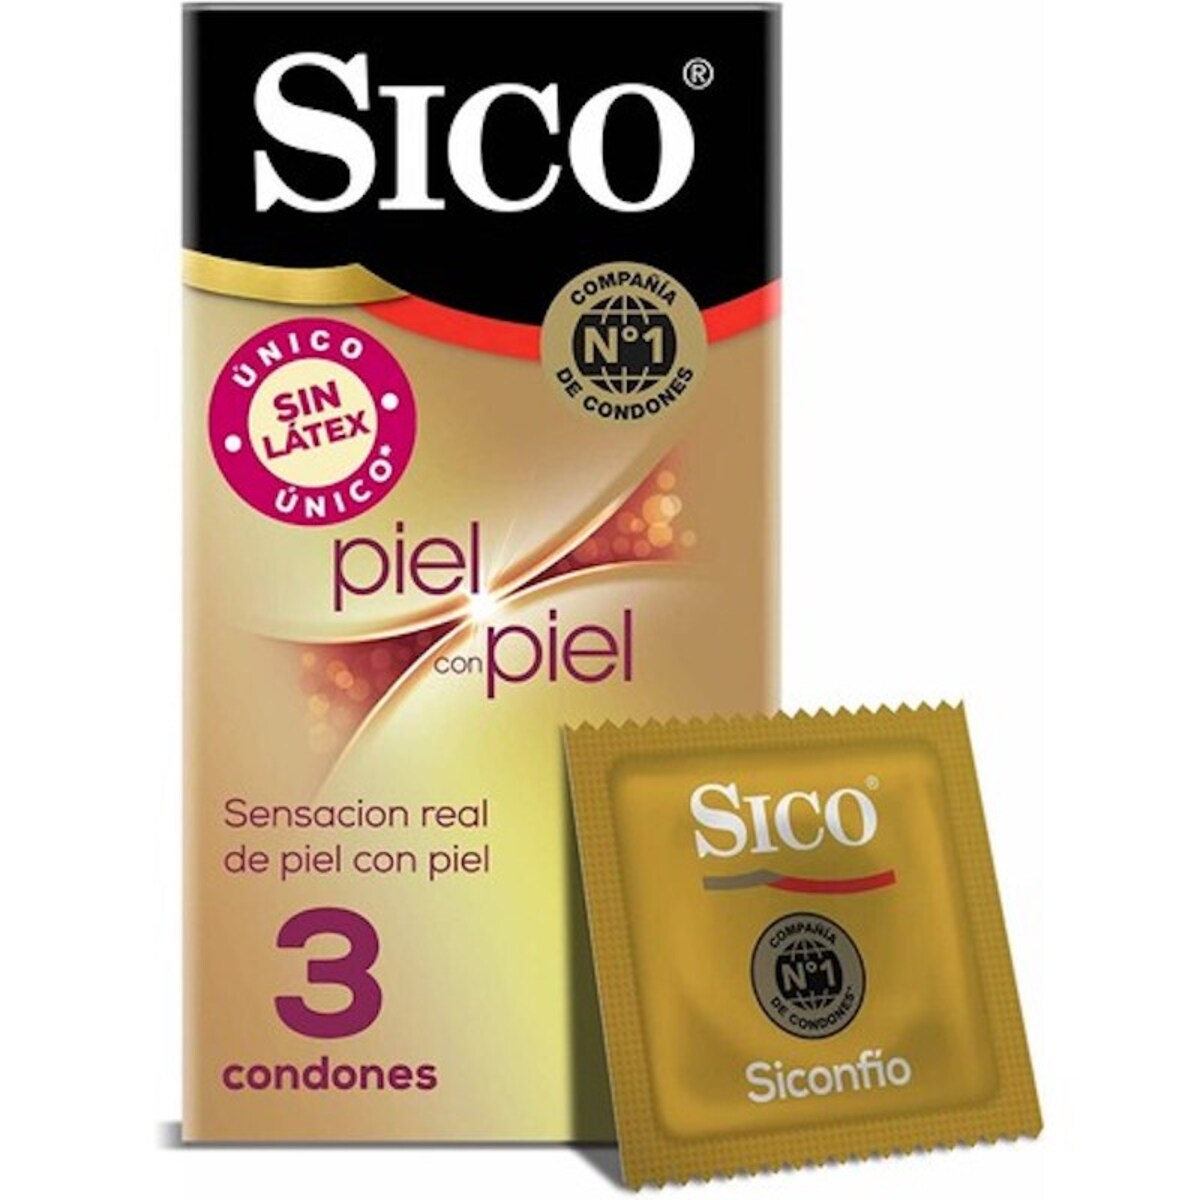 Sico Condones Preservativo Piel con Piel 3 piezas